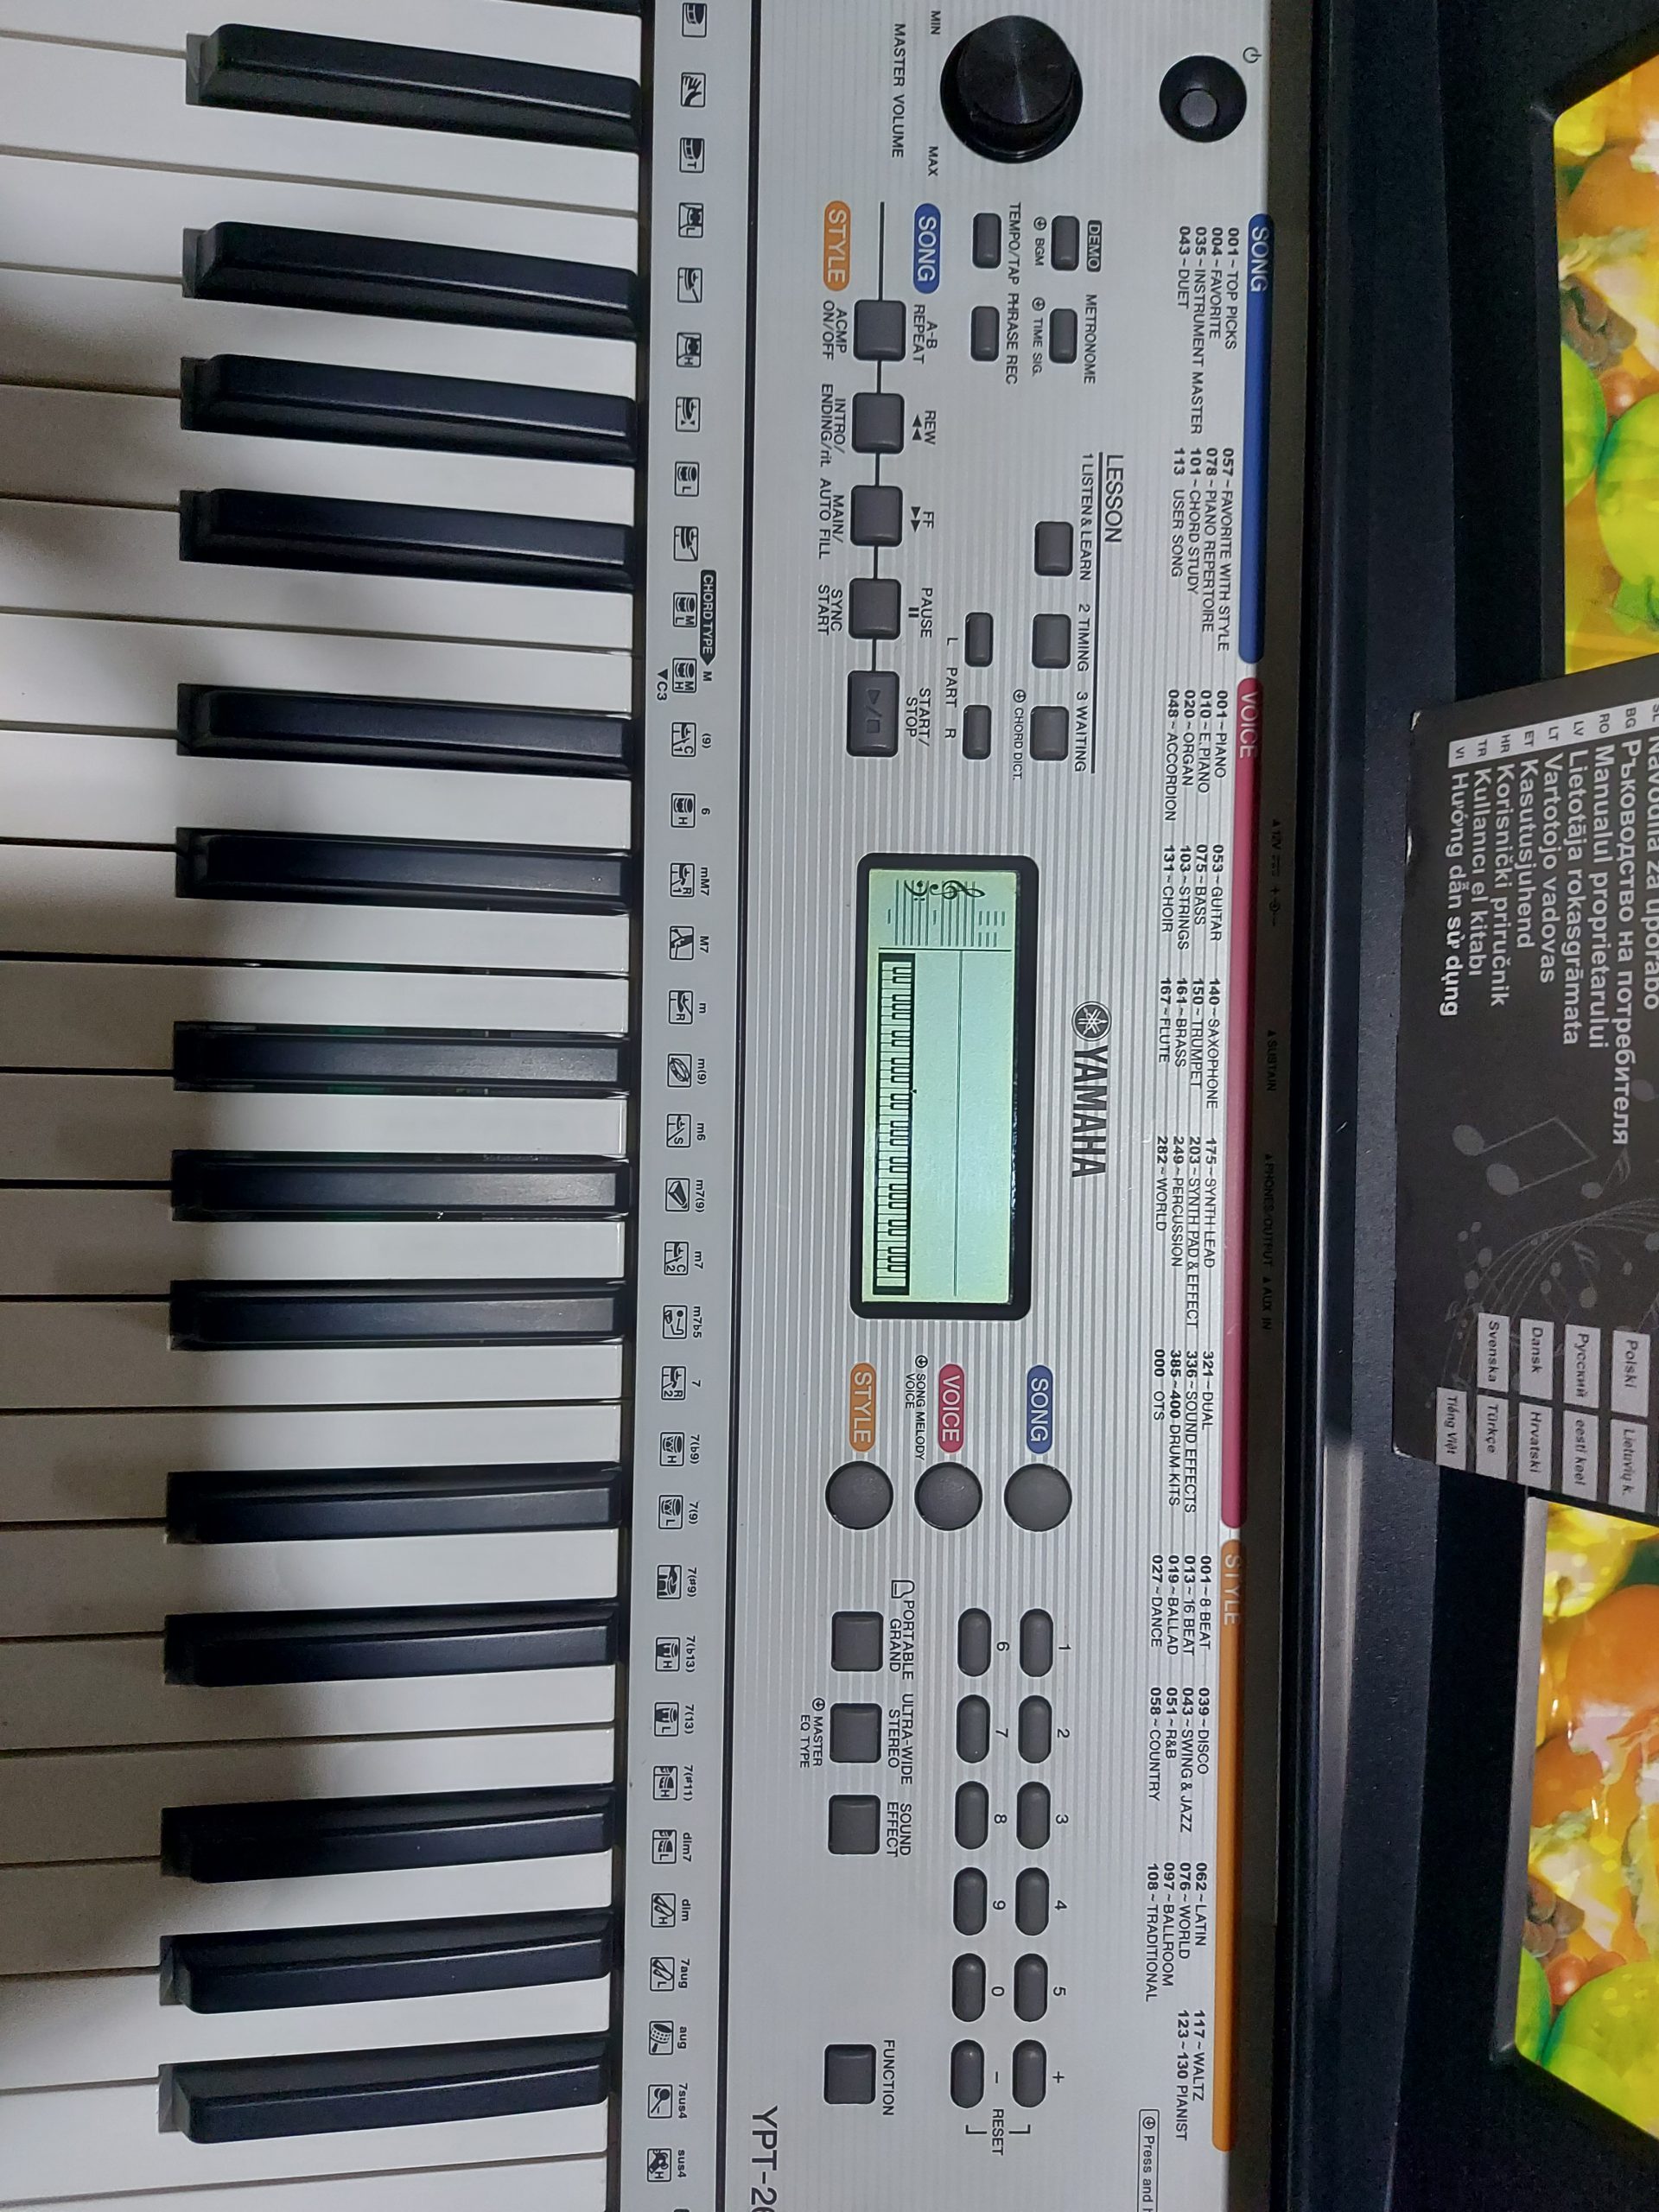 Yamaha YPT – 260 (Keyboard – Organ)